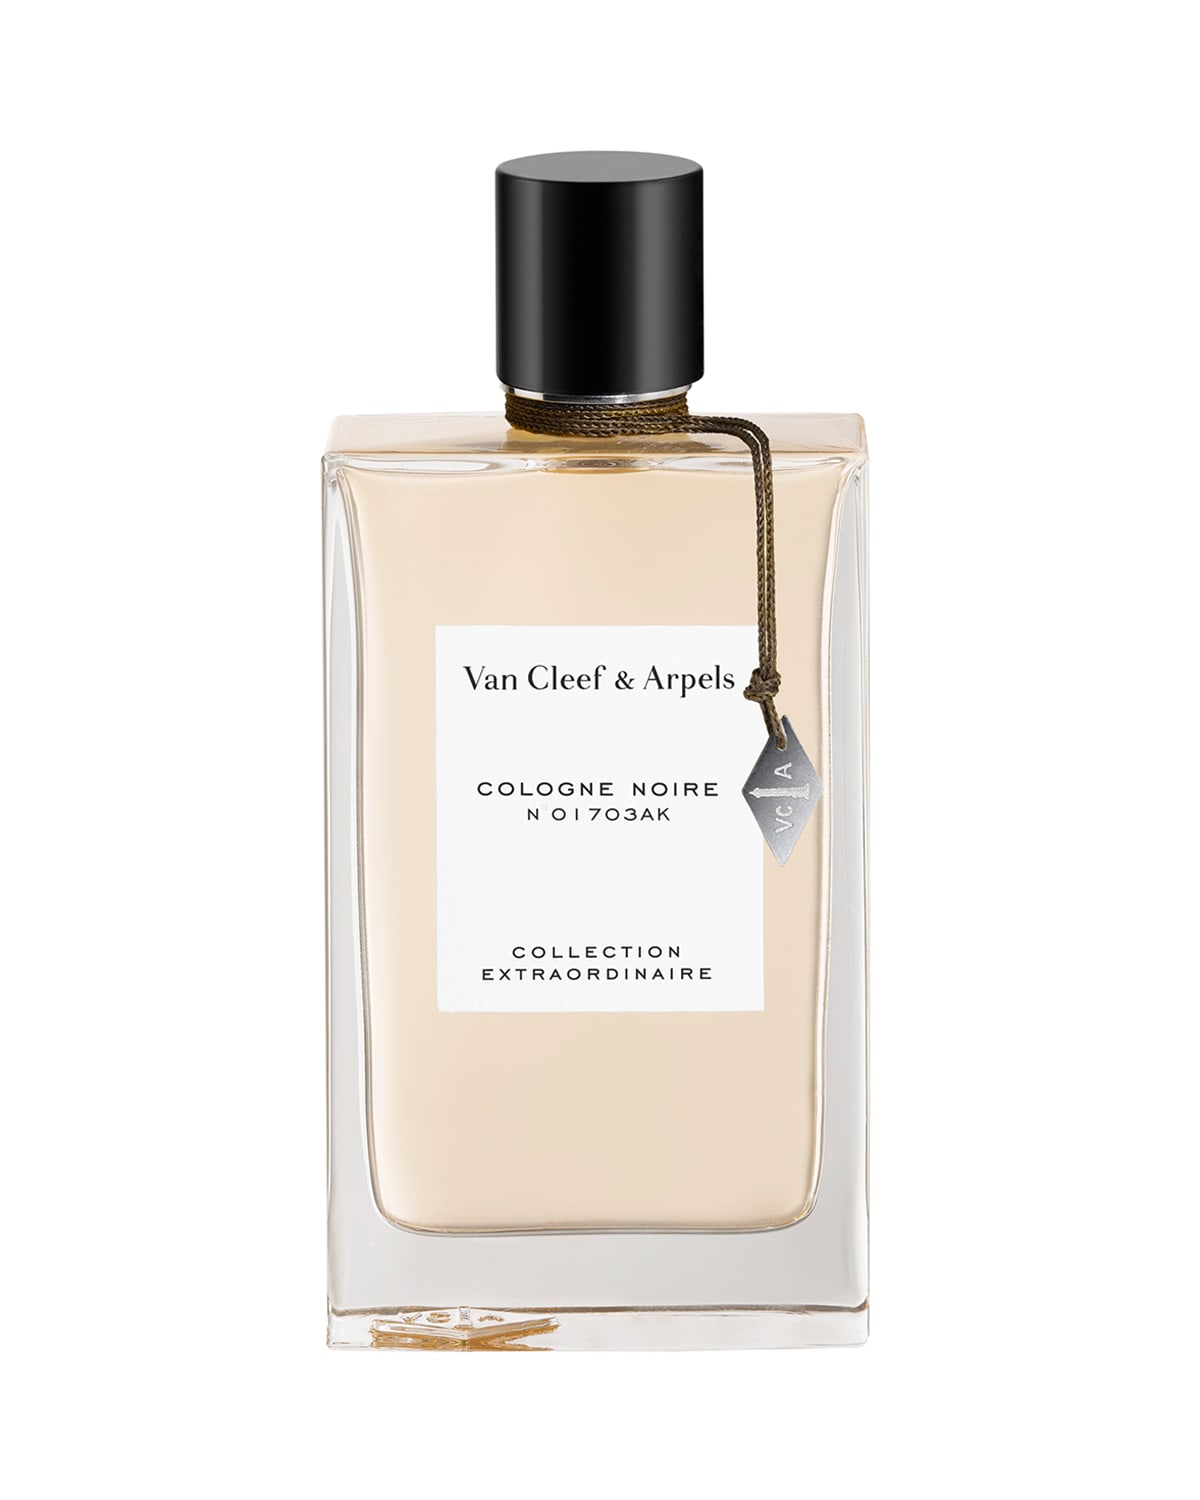 1.5 oz. Exclusive Collection Extraordinaire Cologne Noire Eau de Parfum